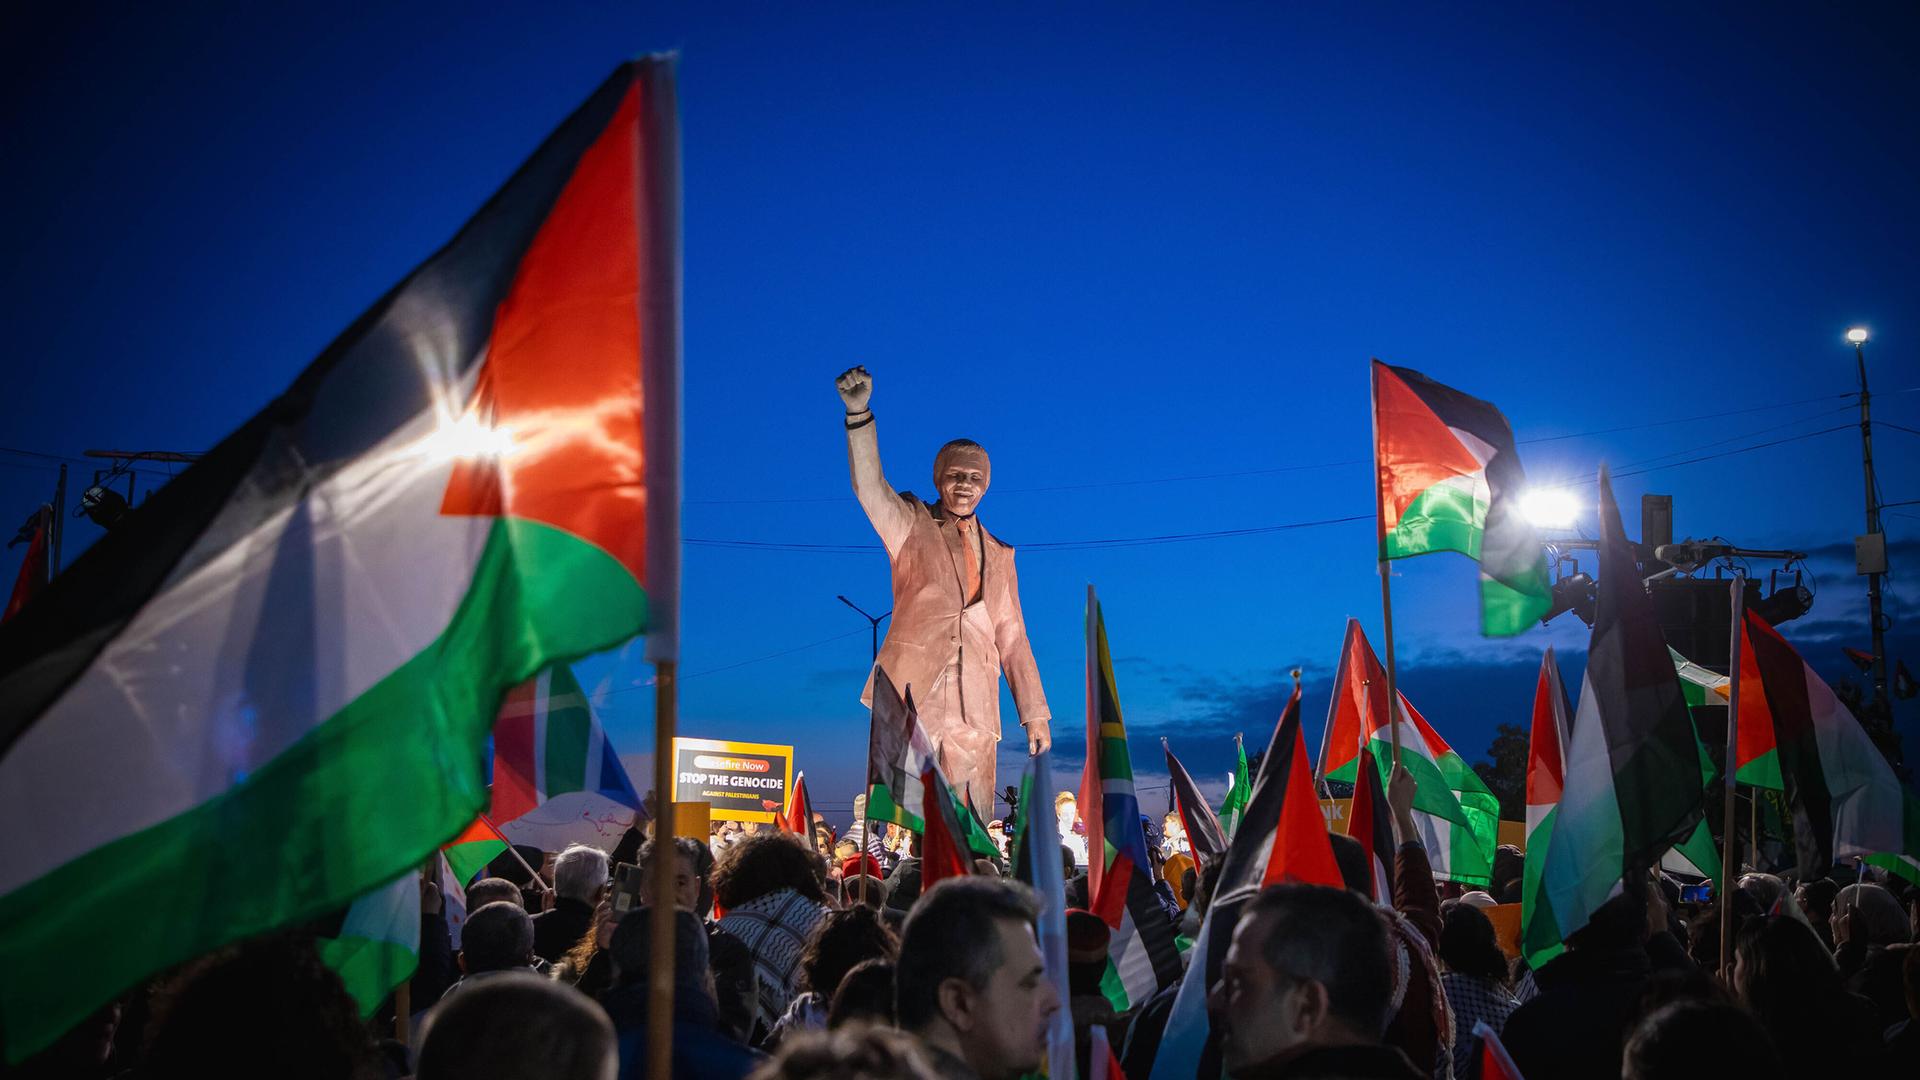 Palästinenser mit Fahnen und Spruchbändern auf dem Nelson-Mandela-Platz mit Mandela-Statue mit geregter Faust in Ramallah im Westjordanland. Anlass war die von der Republik Südafrika beim Internationalen Gerichtshof (IGH) eingereichte Klage wegen mutmaßlichen Völkermords gegen Israel.